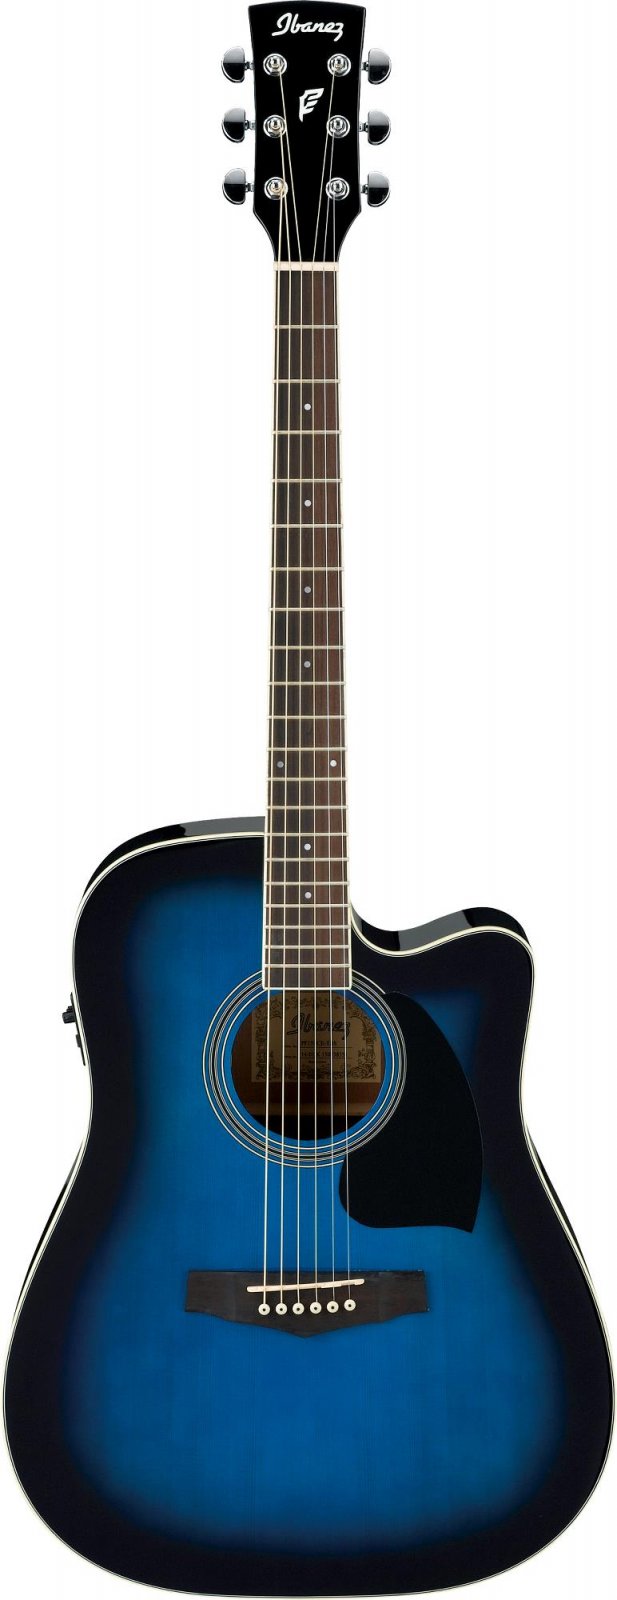 Ibanez PF15ECETBS Transparent Blue Sunburst Acoustic Electric Guitar